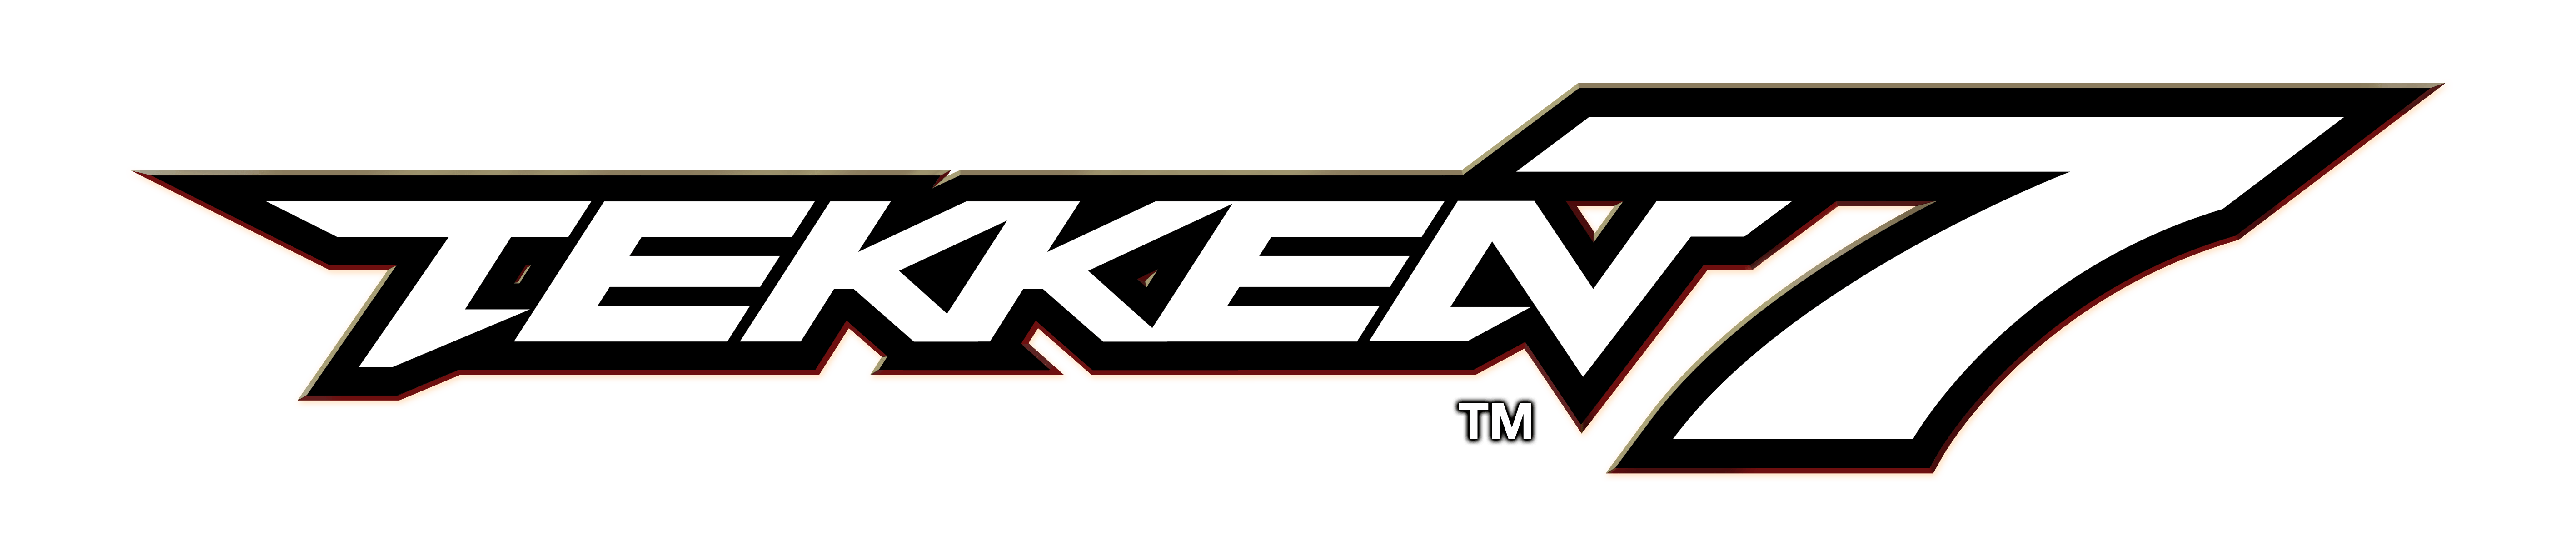 Tekken Logo LogoDix.